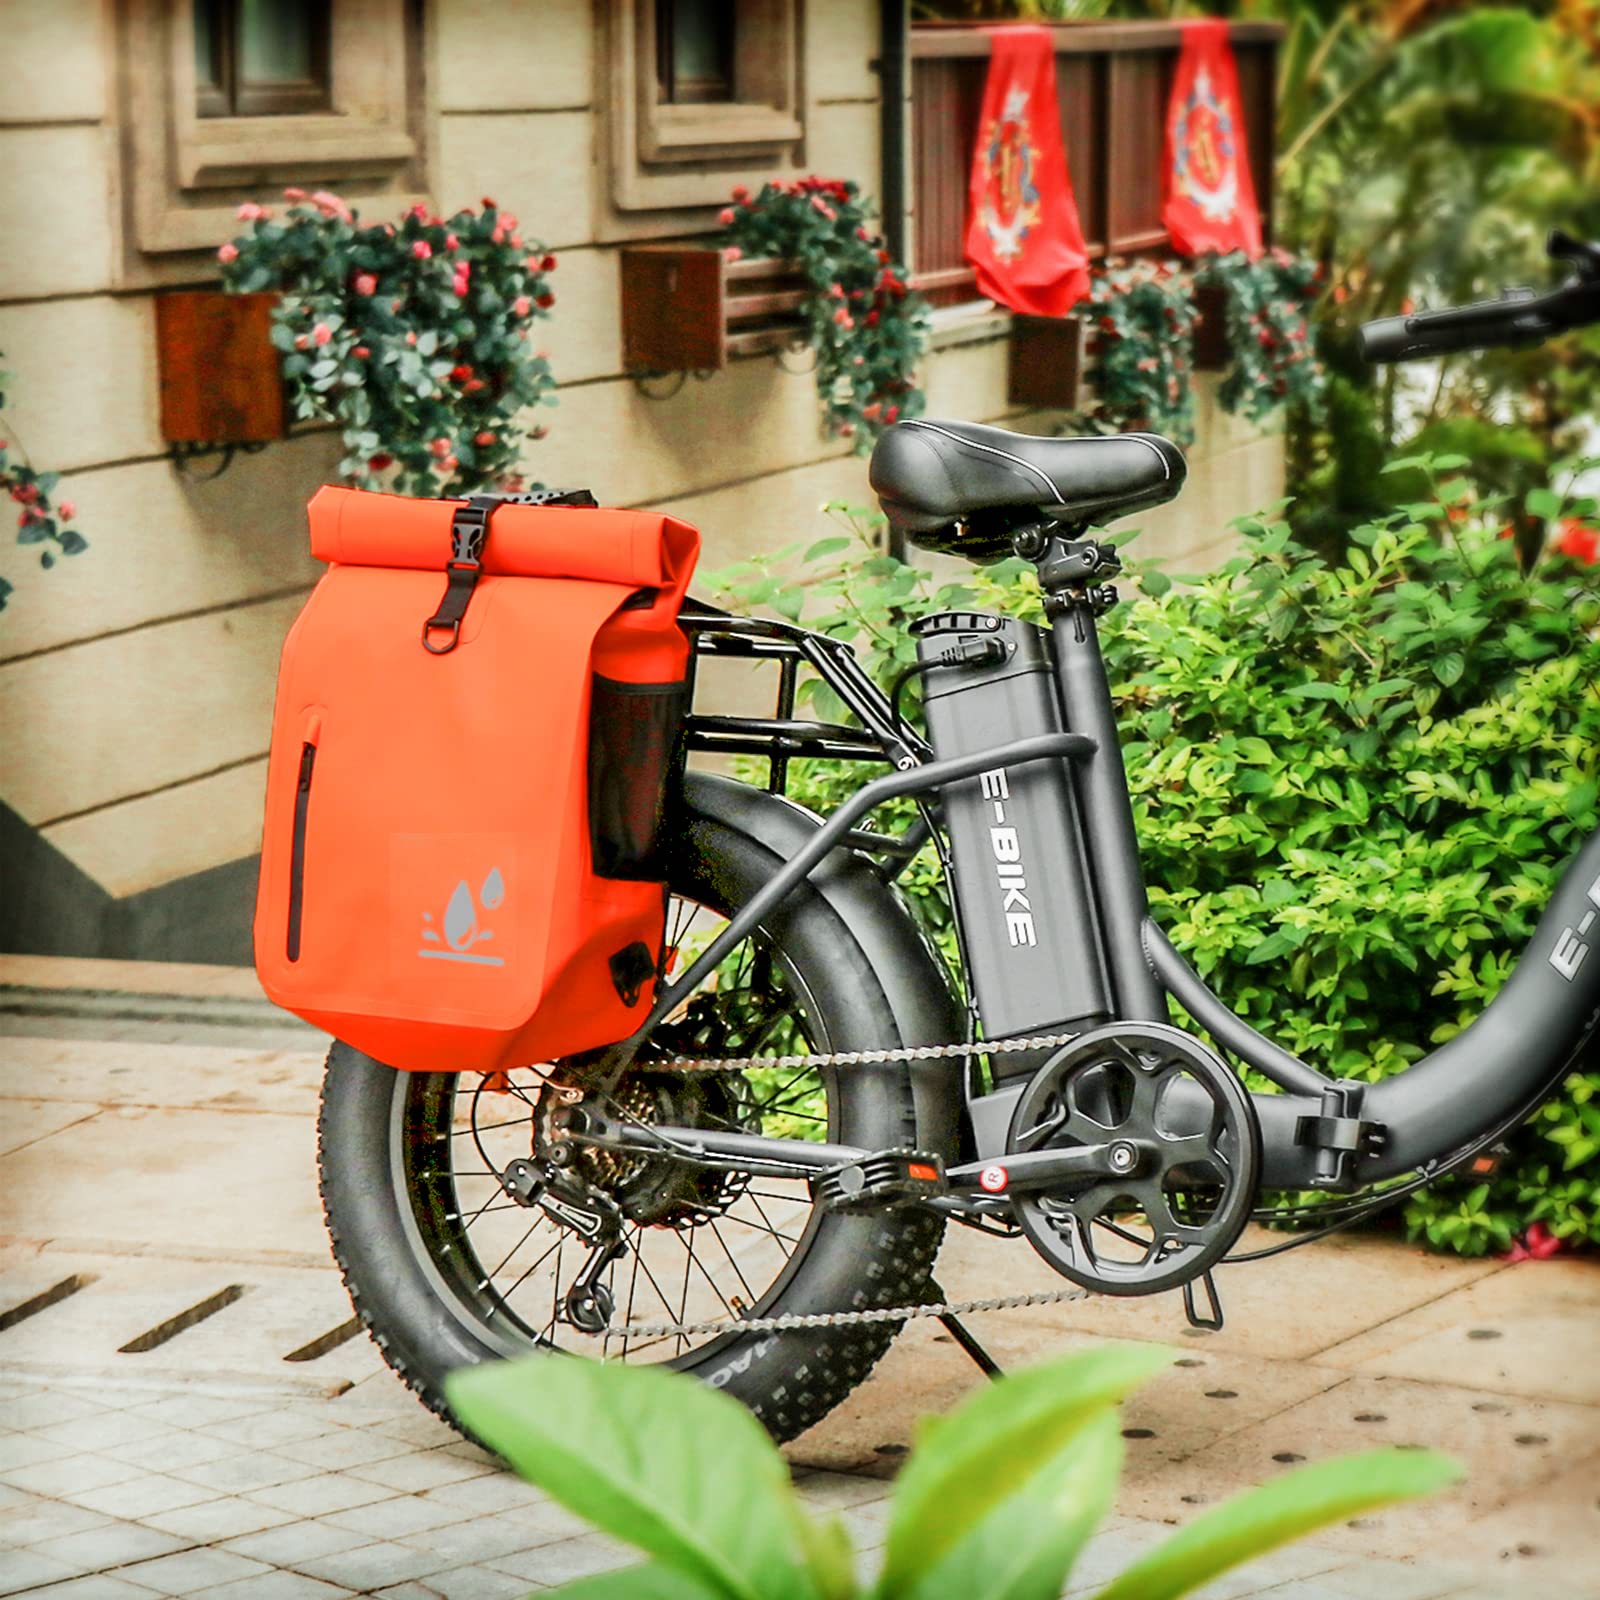 Axiniu Patent Pending Exclusive 3 in 1 Multi-functional Bike Bag | Super  Large 29L Waterproof Bike Pannier Bag | Bike Saddle Bag for Rear Rack |  Bike